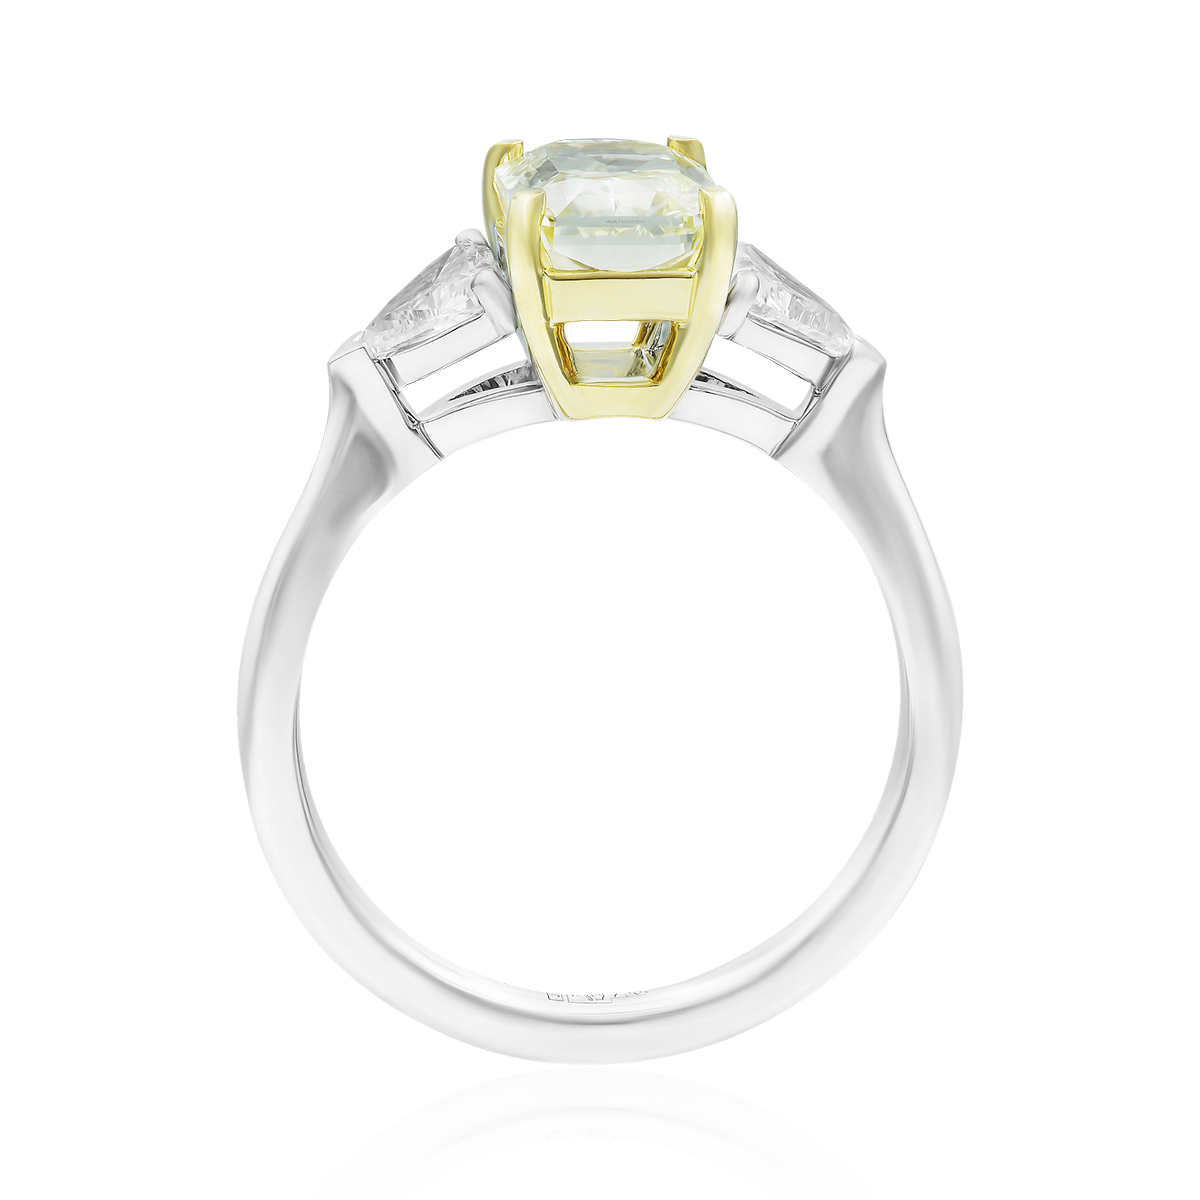 Кольцо с бриллиантами из белого золота 750 пробы, фото № 3